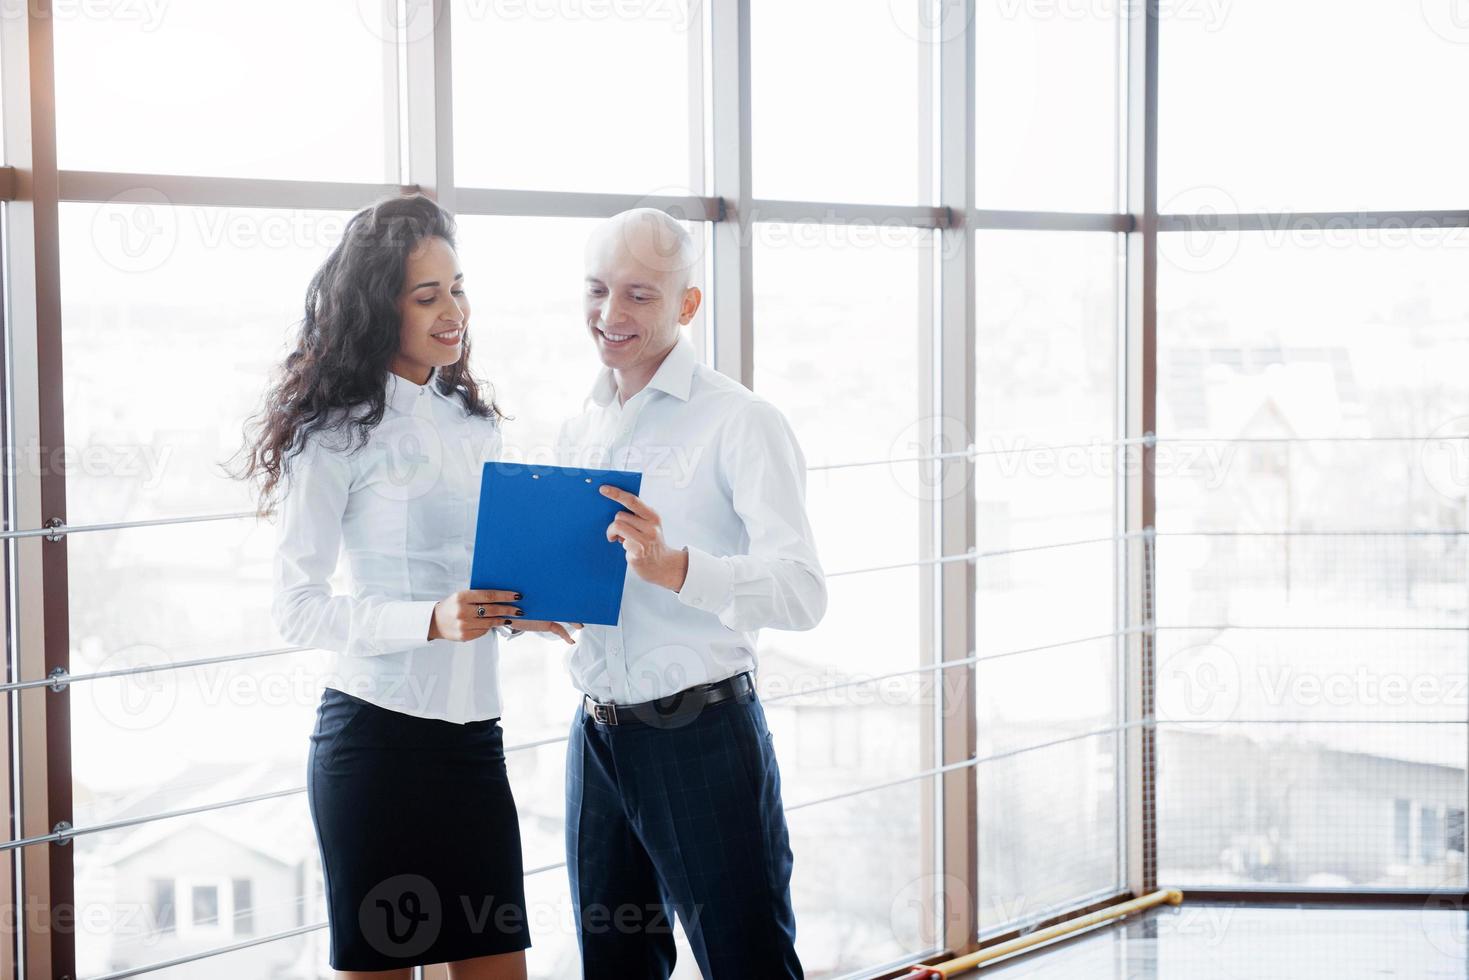 affärsman och affärskvinna som studerar ett diagram på tallriken och pappersdokument vid fönstret på bakgrunden av stadskontoret på en hög våning foto